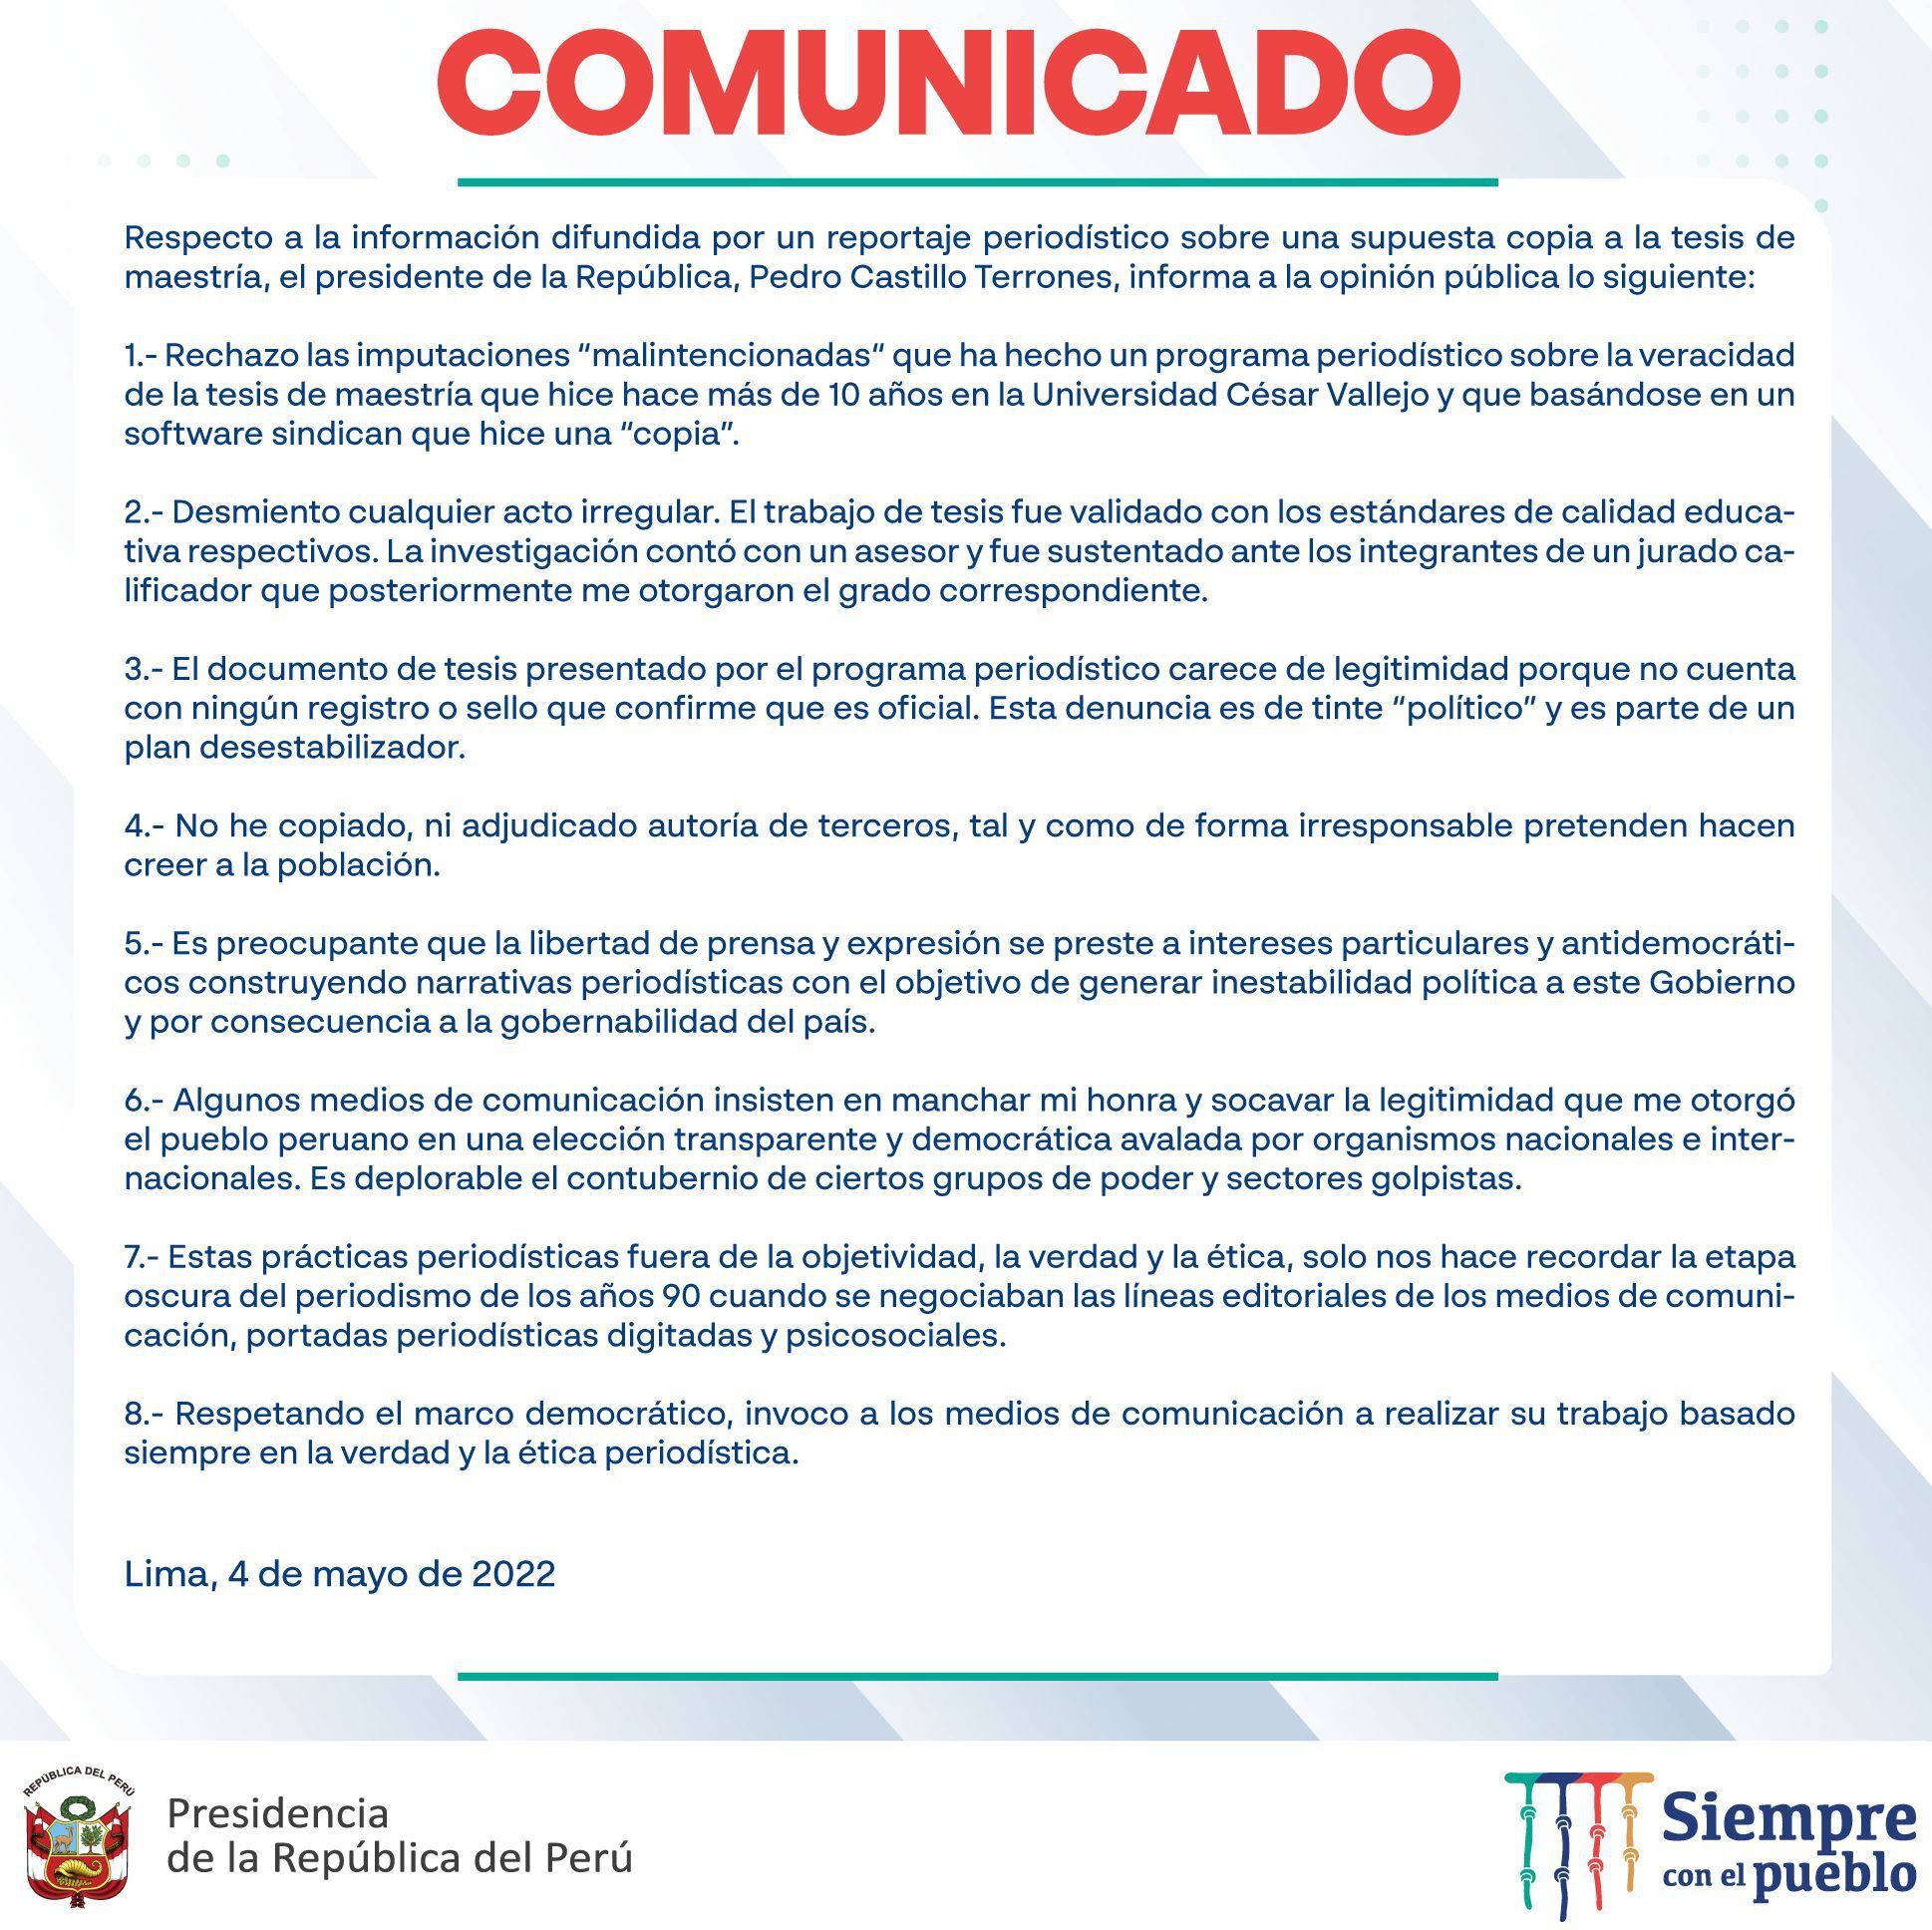 El comunicado del presidente Pedro Castillo no se refiere concretamente a un hecho grave: las irregularidades en los profesionales que validaron los instrumentos de investigación para su tesis de maestría en la UCV.